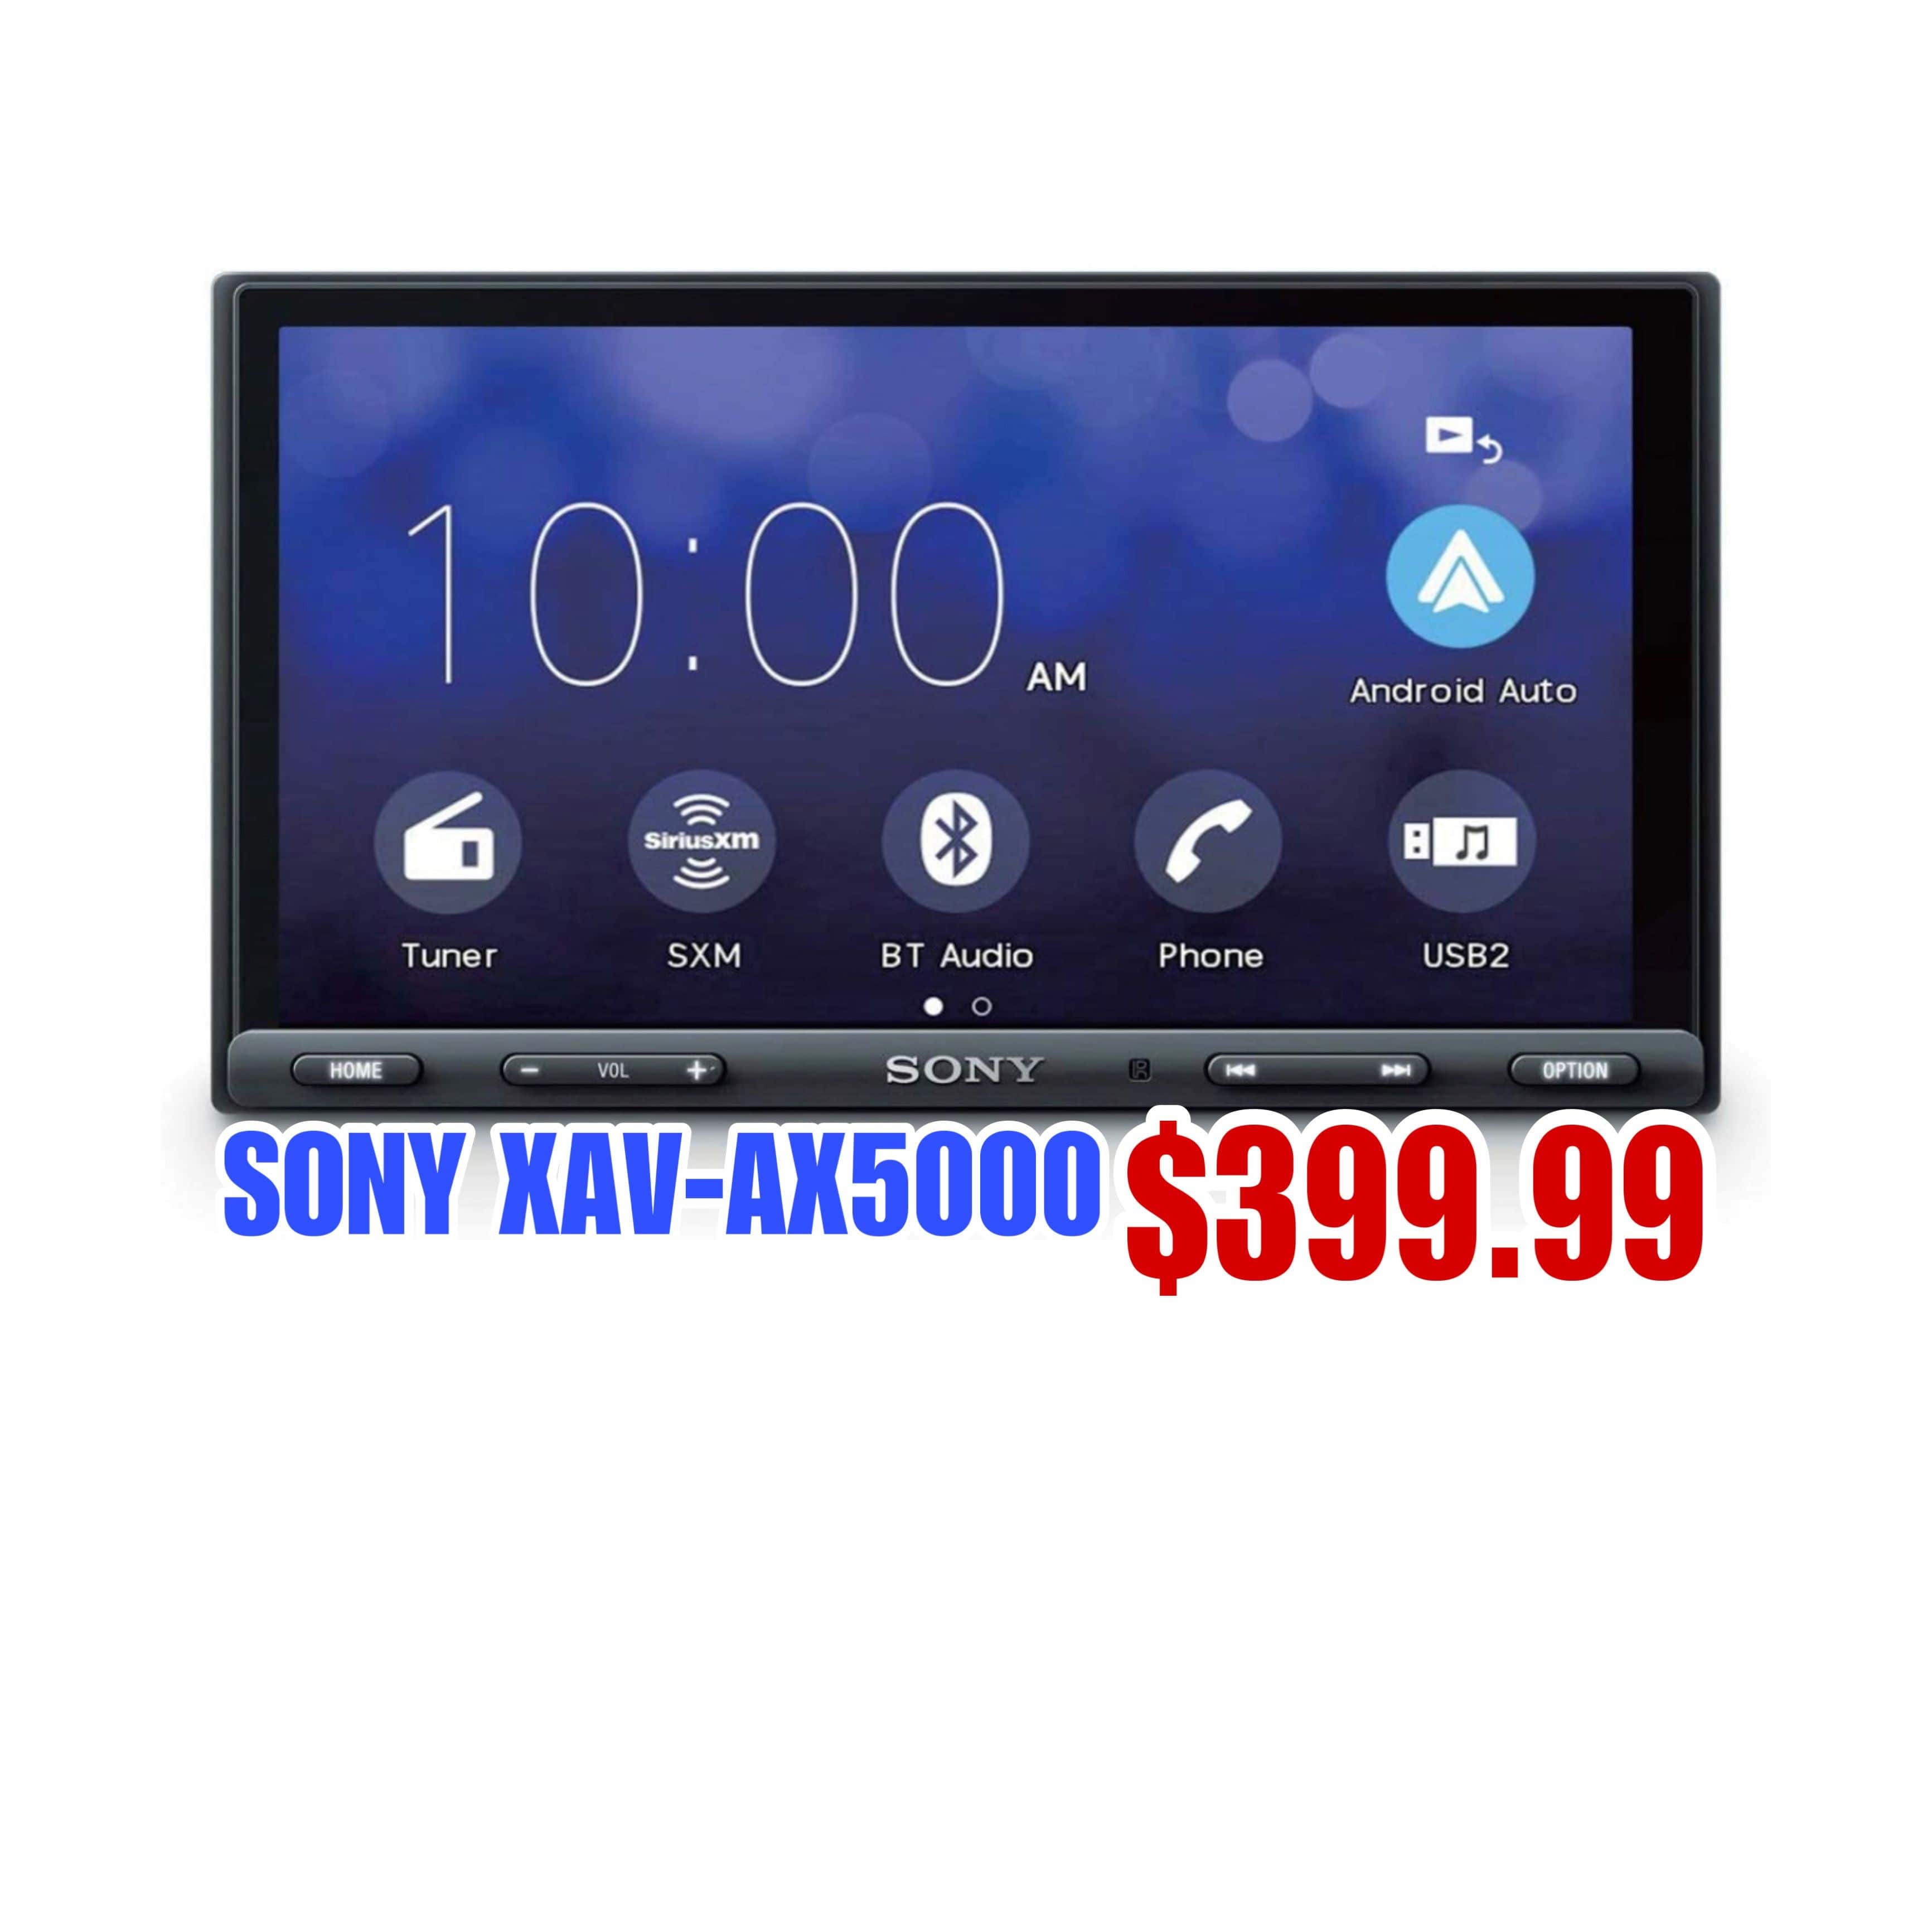 Sony XAV-AX5000 $399